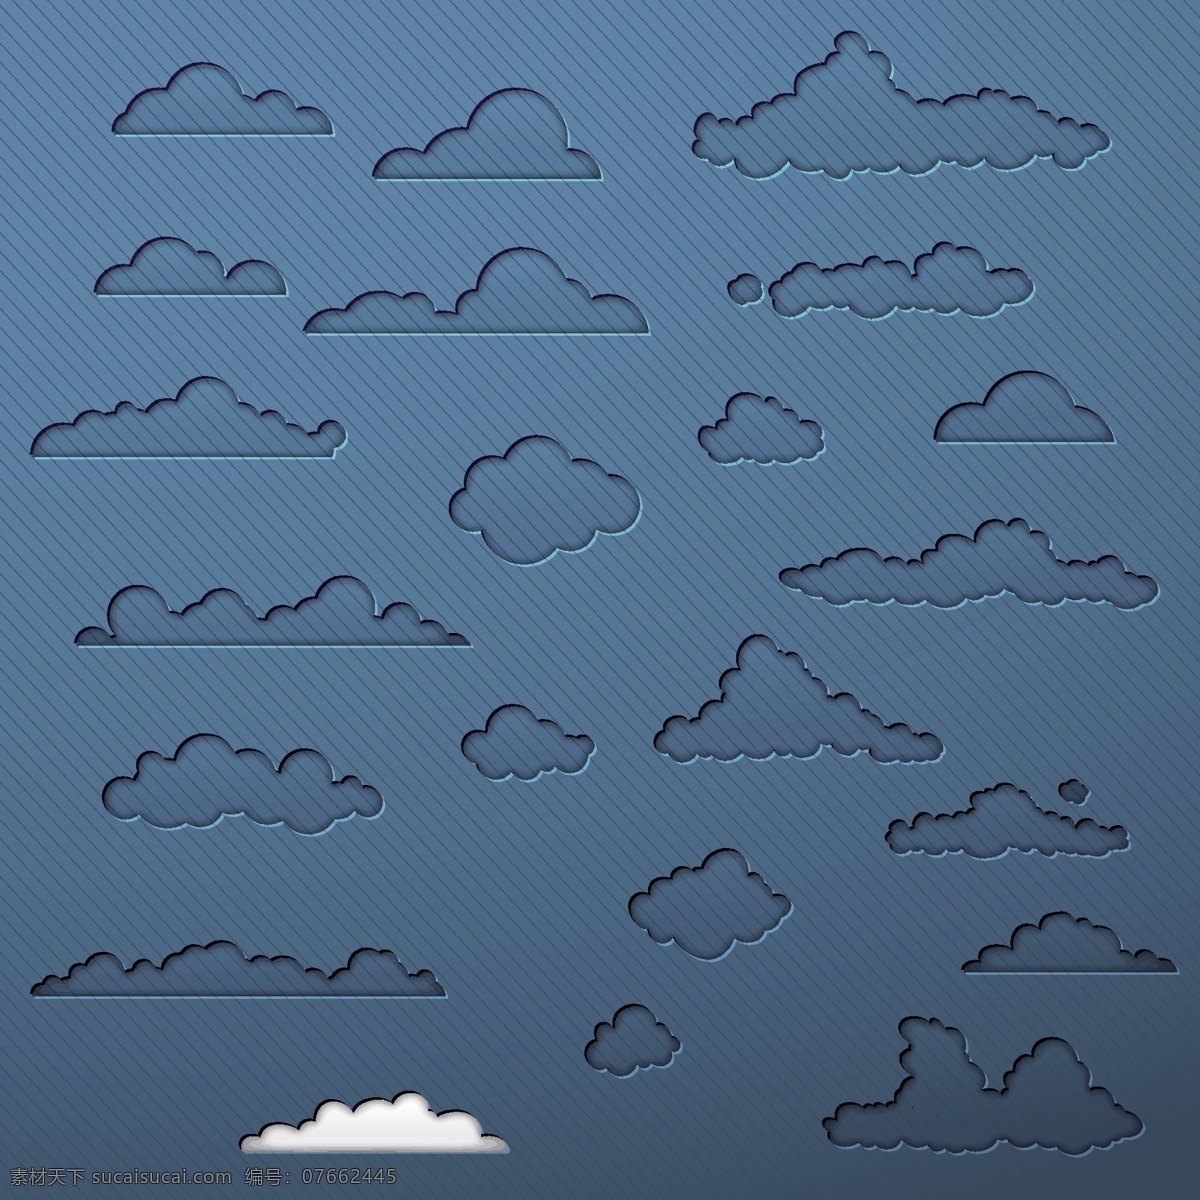 云朵背景边框 云朵背景 云计算图标 云系统图标 云服务 网络信息科技 云朵图标 生活百科 矢量素材 蓝色